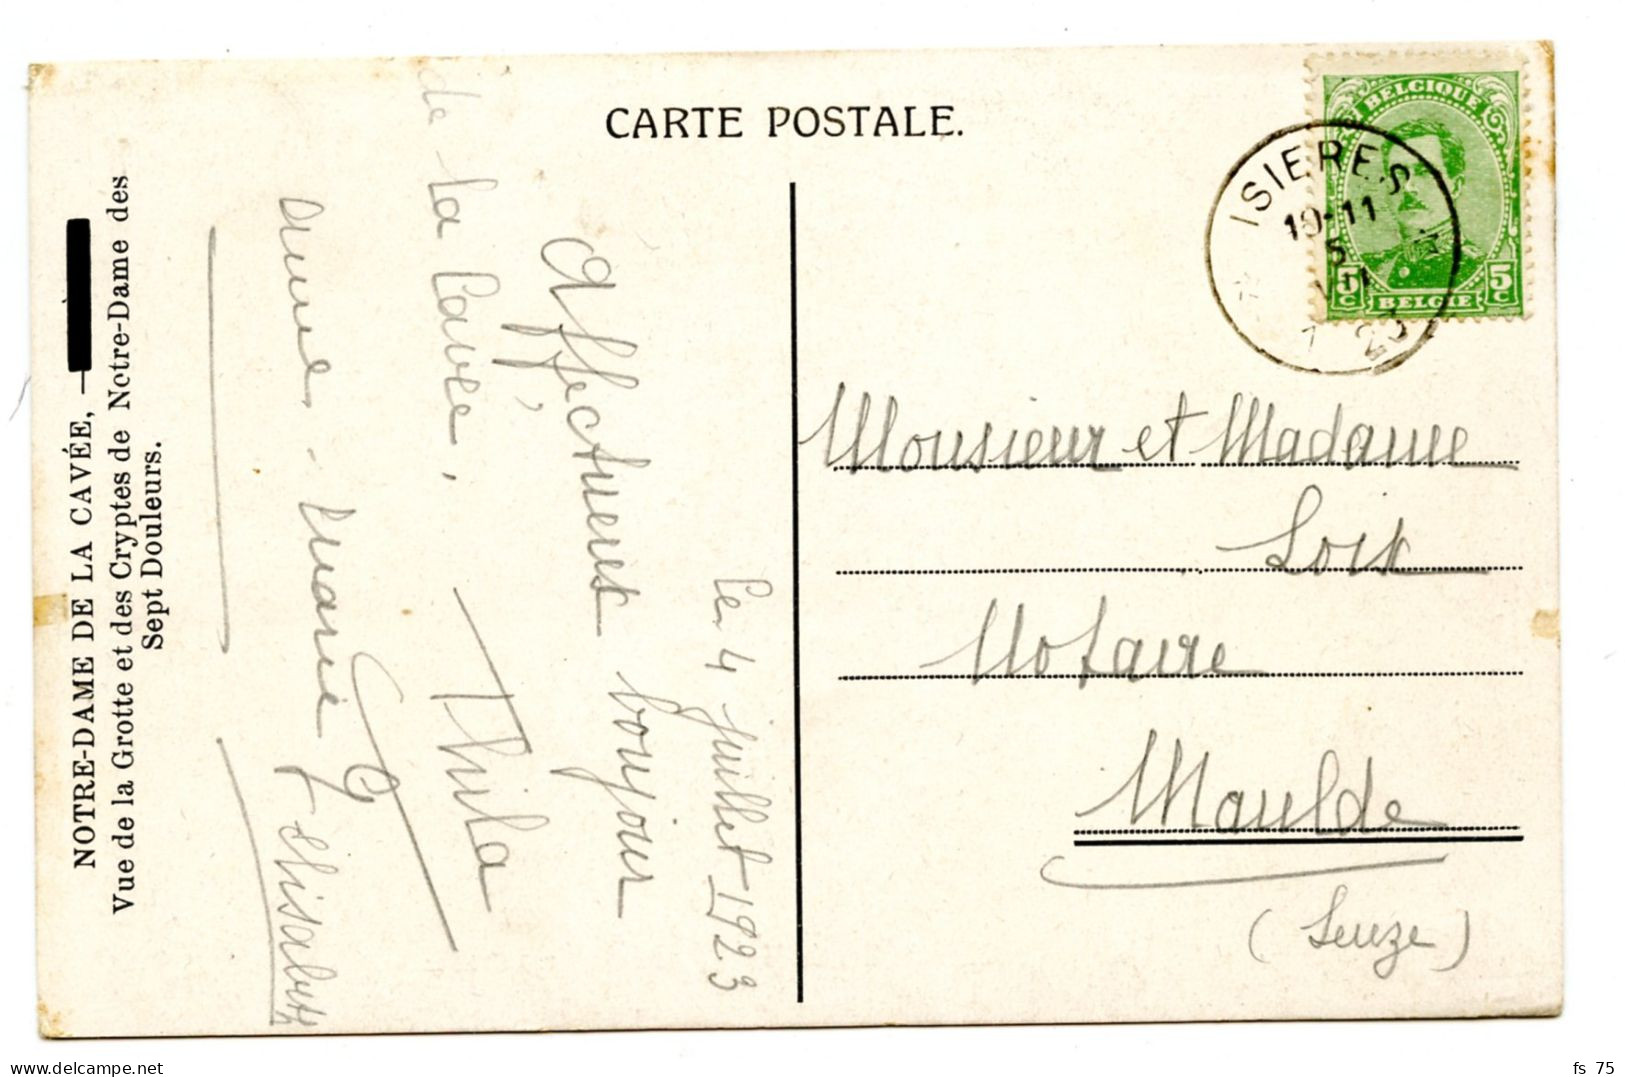 BELGIQUE - COB 137 SIMPLE CERCLE RELAIS A ETOILES ISIERES SUR CARTE POSTALE, 1923 - Postmarks With Stars